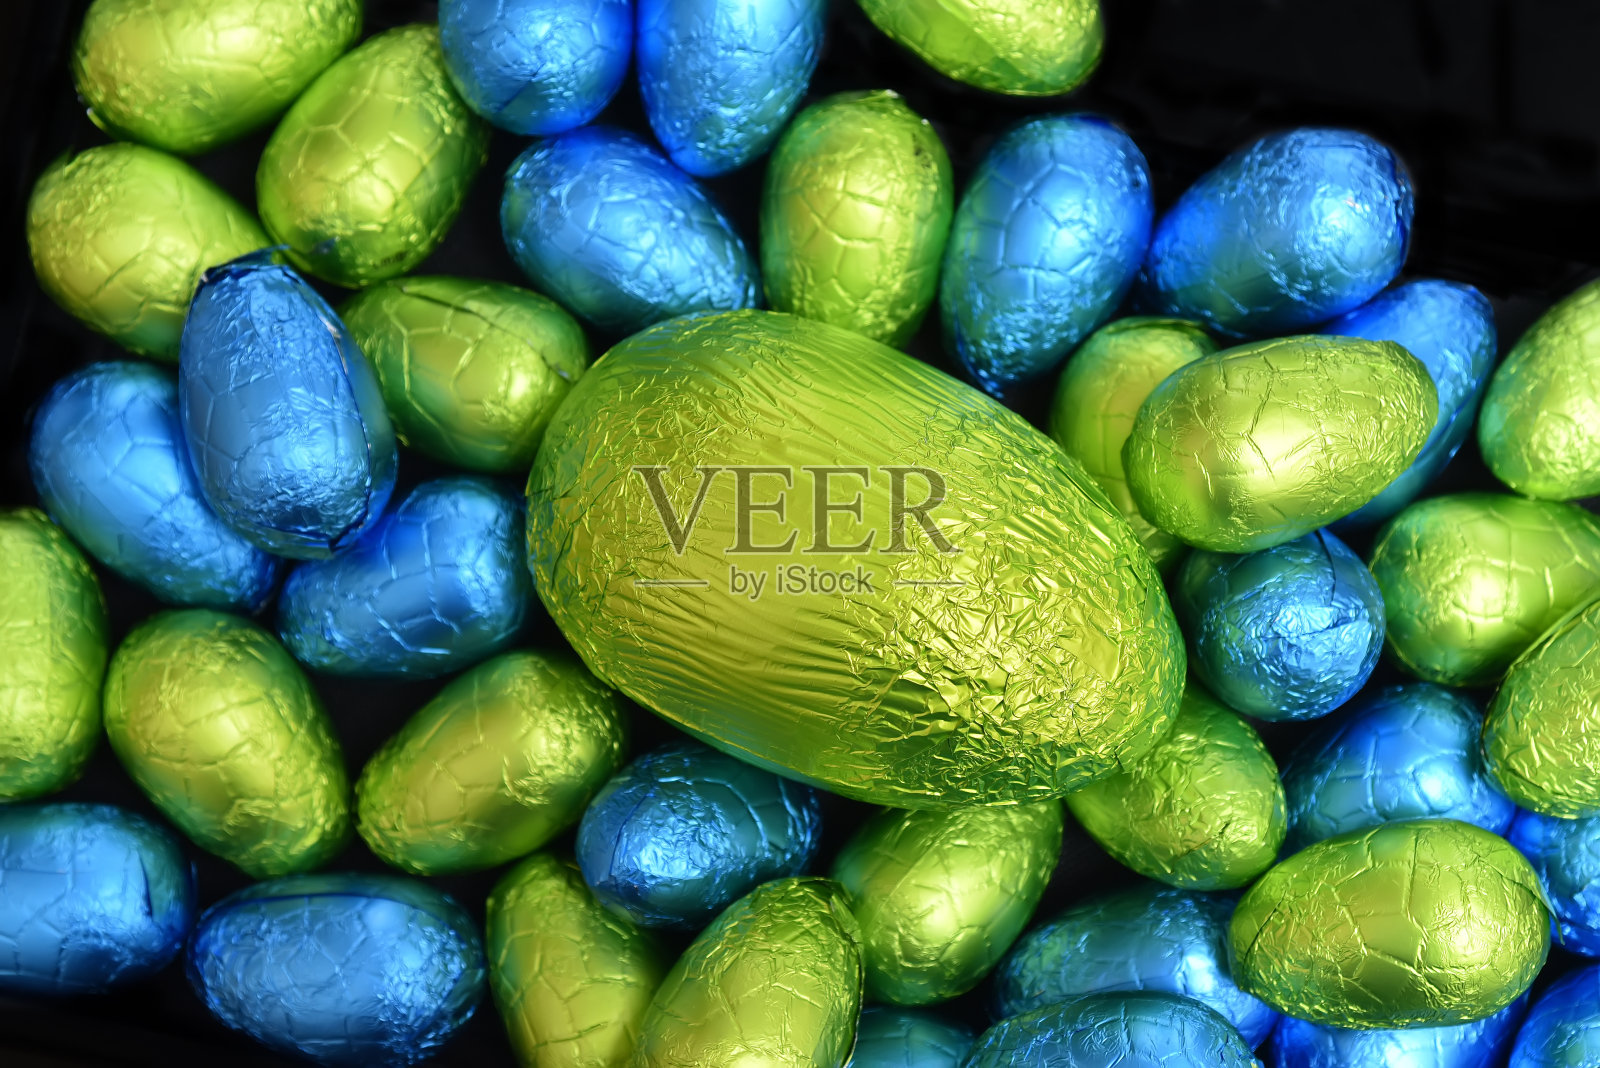 1 .用锡箔纸包裹一堆或一组颜色各异、大小各异的巧克力复活节彩蛋，颜色有蓝色、黄色和酸橙绿色，中间放一个绿色的大鸡蛋。照片摄影图片